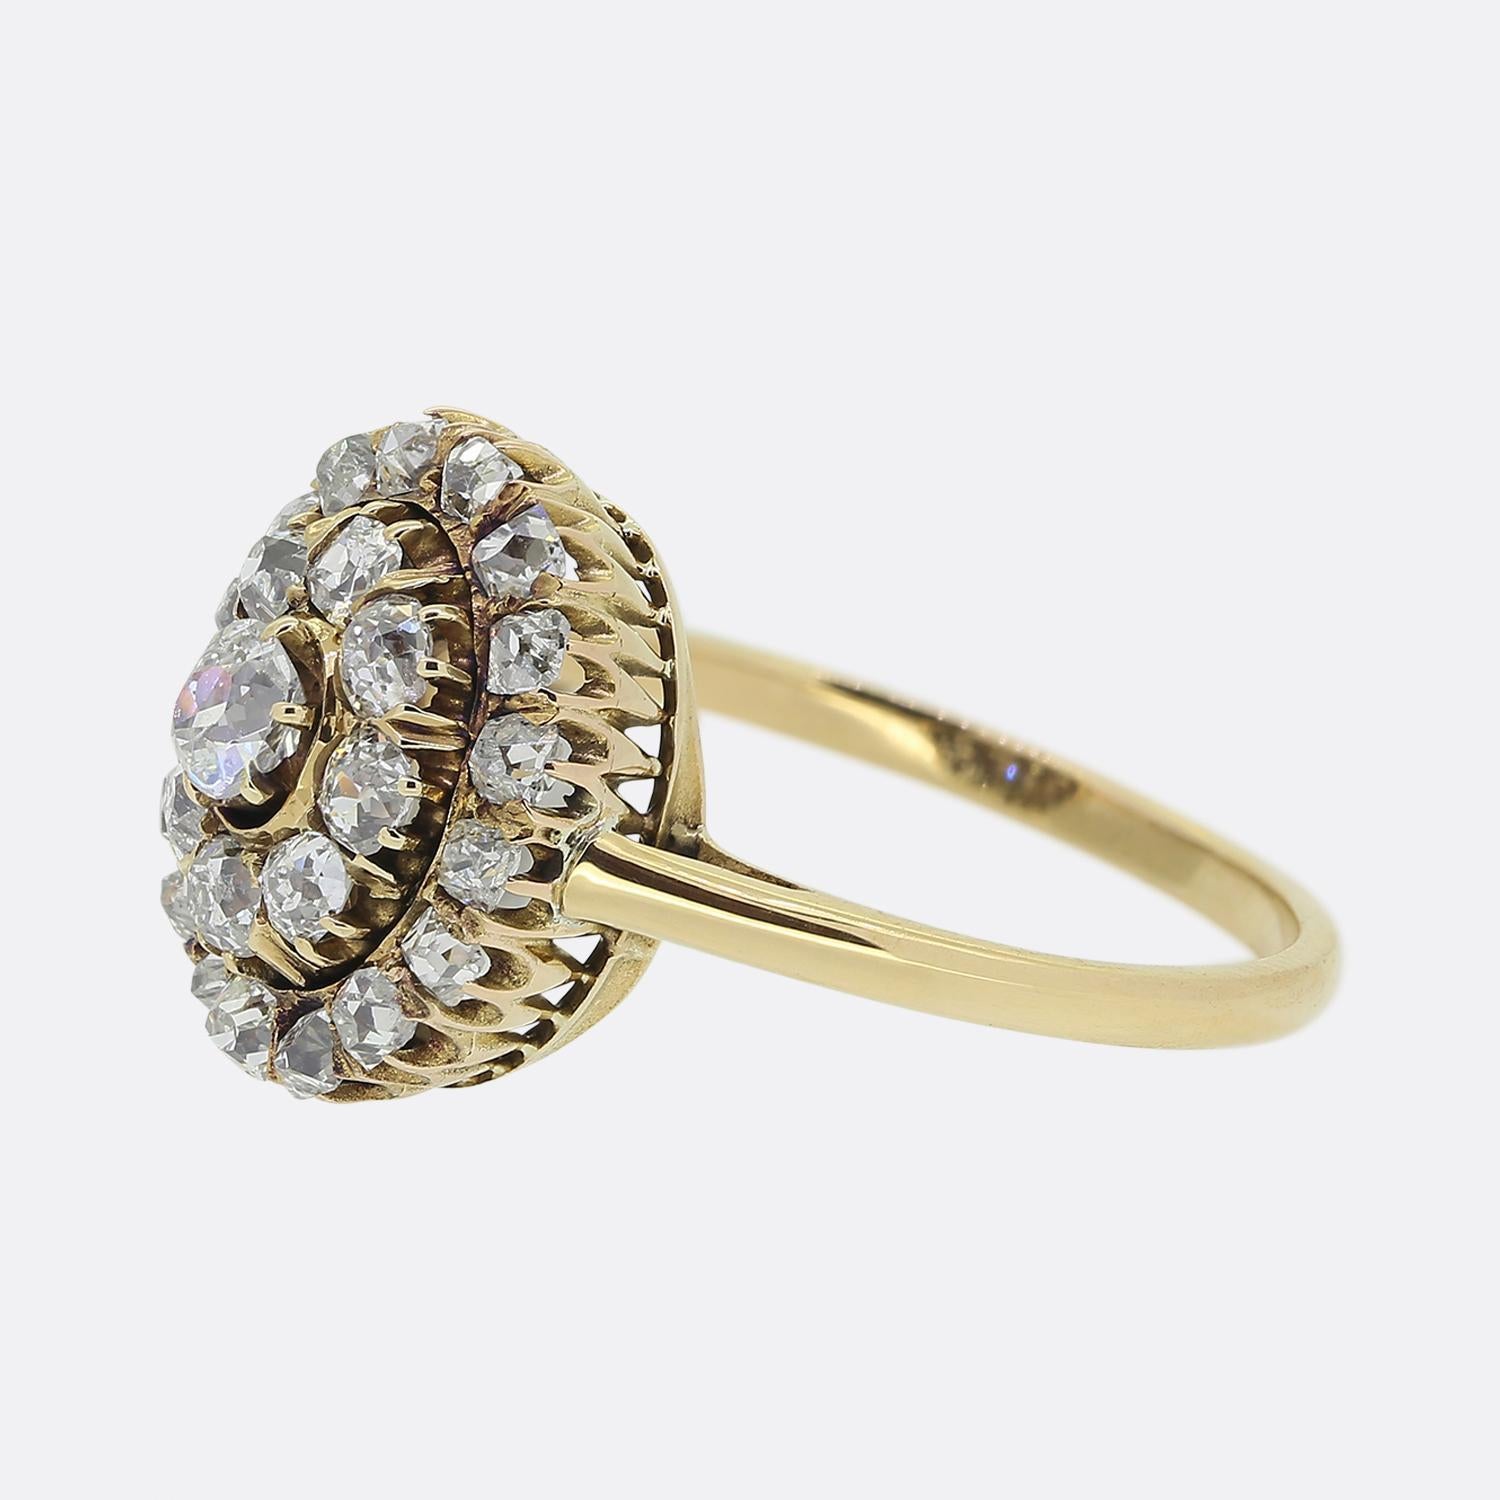 Hier haben wir einen charmanten Diamant-Cluster-Ring aus der viktorianischen Ära. Dieses antike Stück zeigt einen alten Diamanten im Kissenschliff in der Mitte der Vorderseite. Der Hauptstein sitzt leicht erhöht und ist von einem doppelten Halo aus